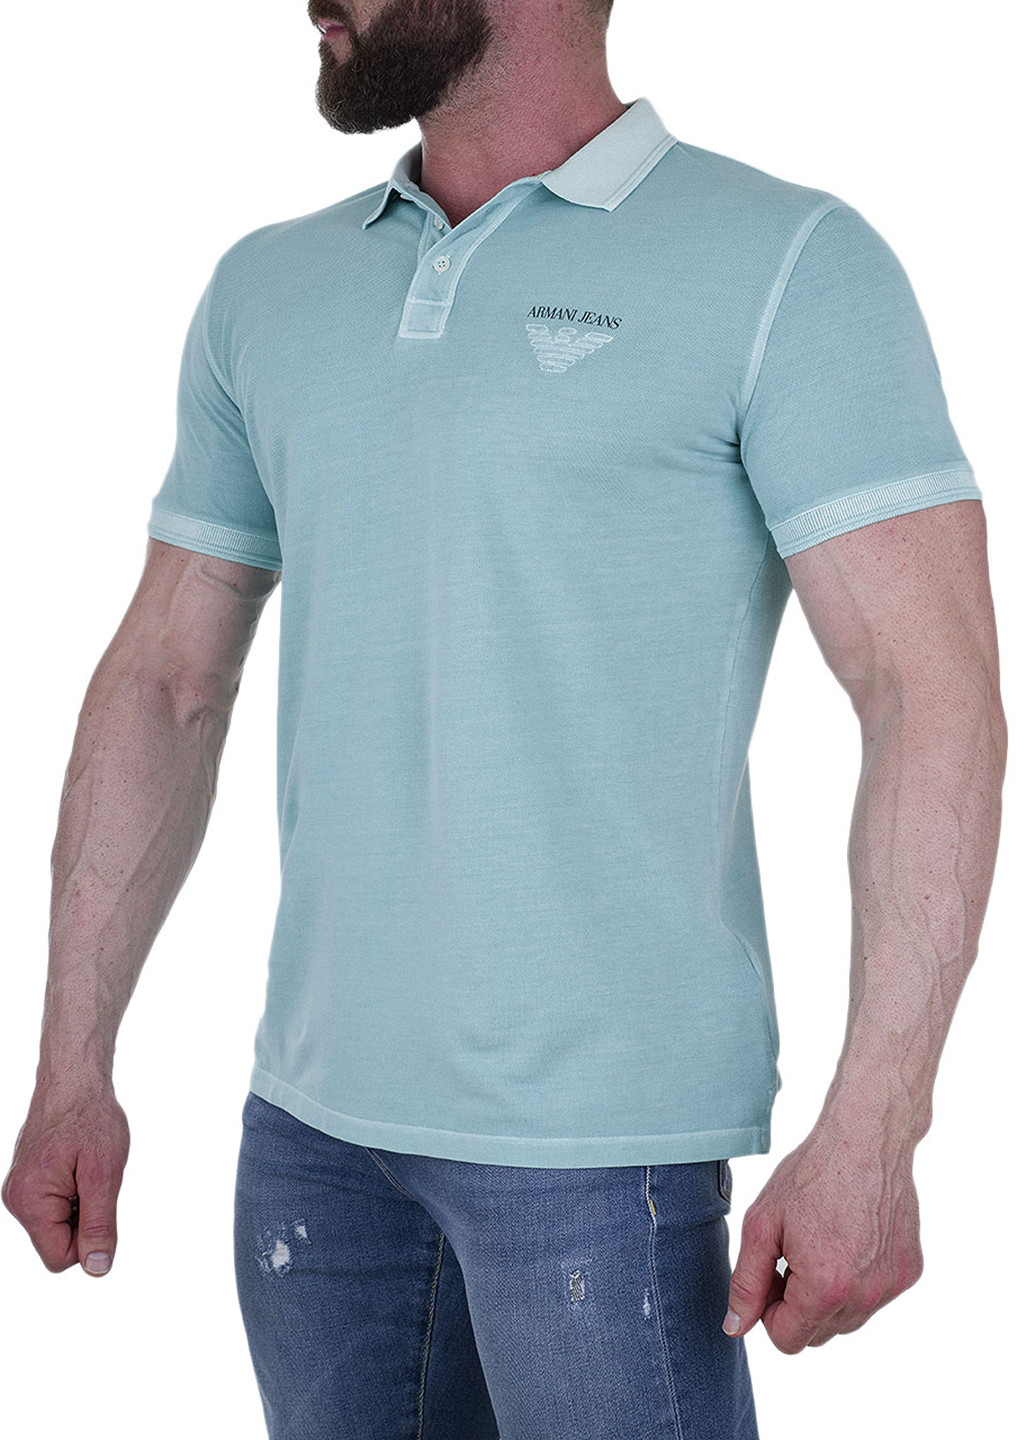 Голубой футболка-поло для мужчин Armani Jeans с логотипом